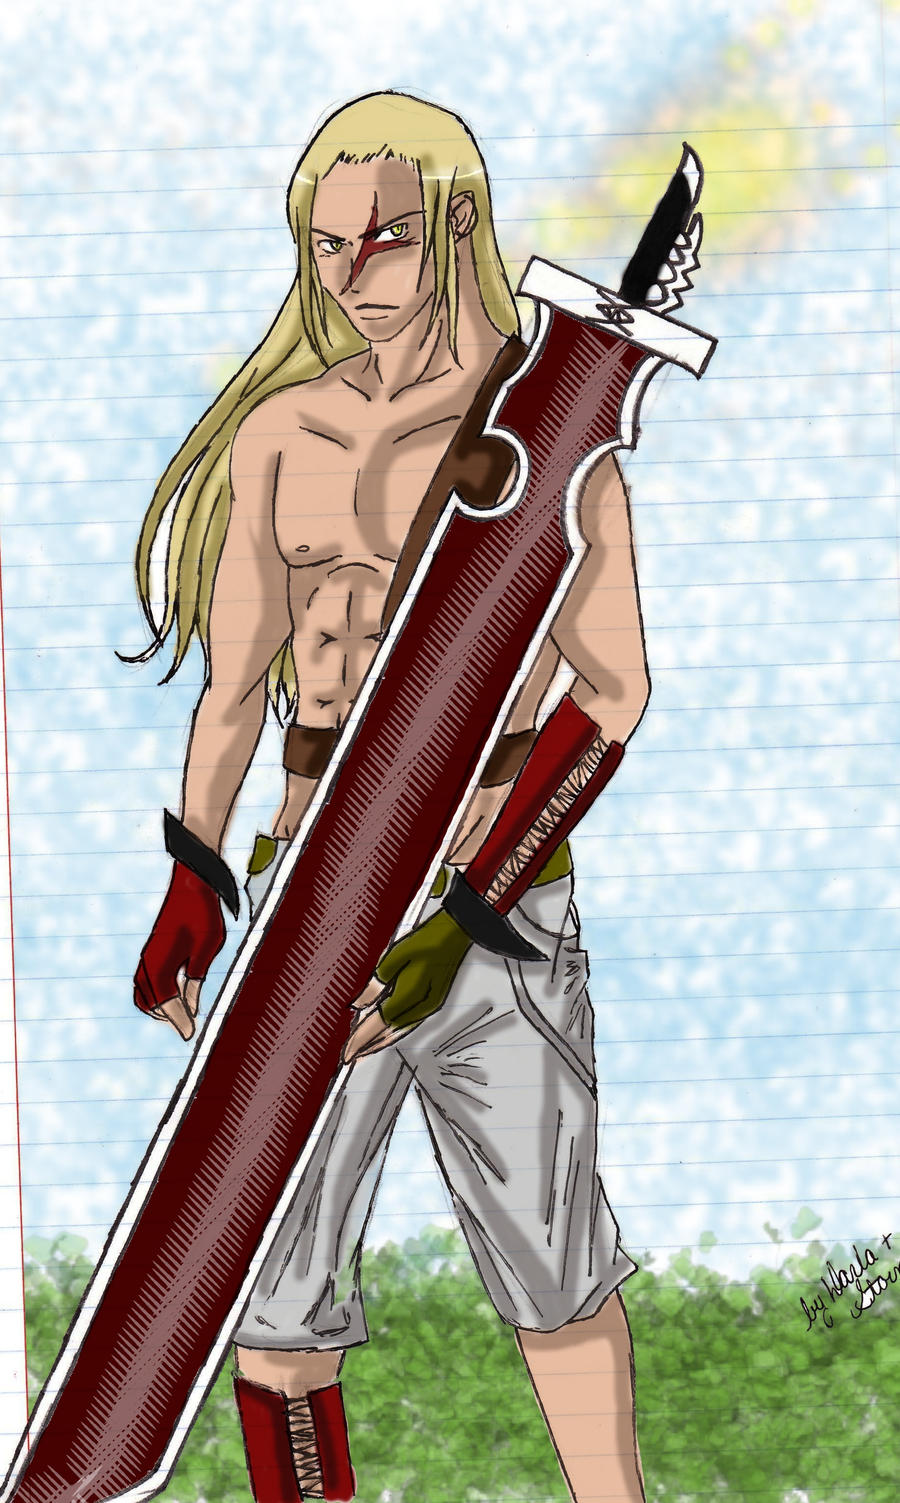 Delinquent Swordsman .Colored. by 0-ViRGiNEViL-0 on DeviantArt